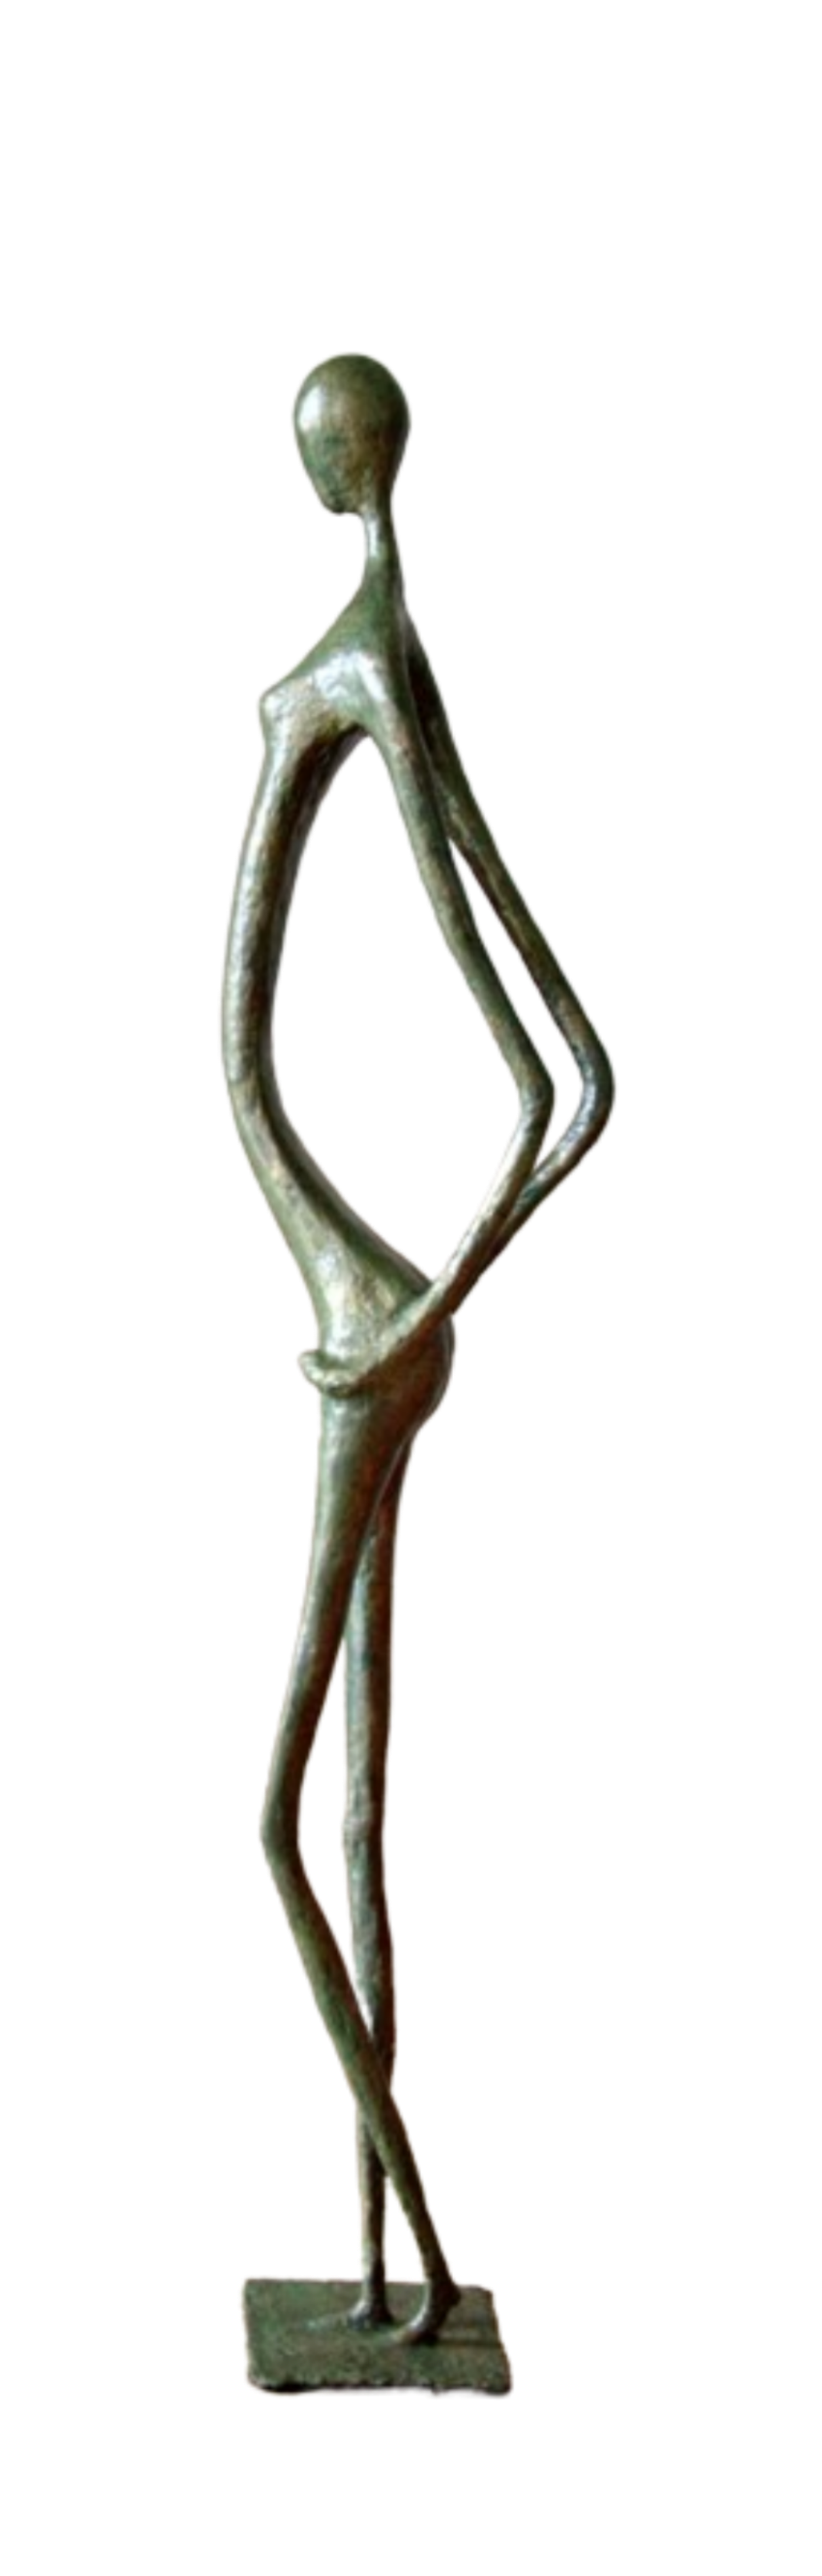 Zélie, sculpture n°141 en papier mâché, représente une africaine cambrée les mains sur les fesses. Mesure 120cm de hauteur, patine acrylique aspect vert-bronze